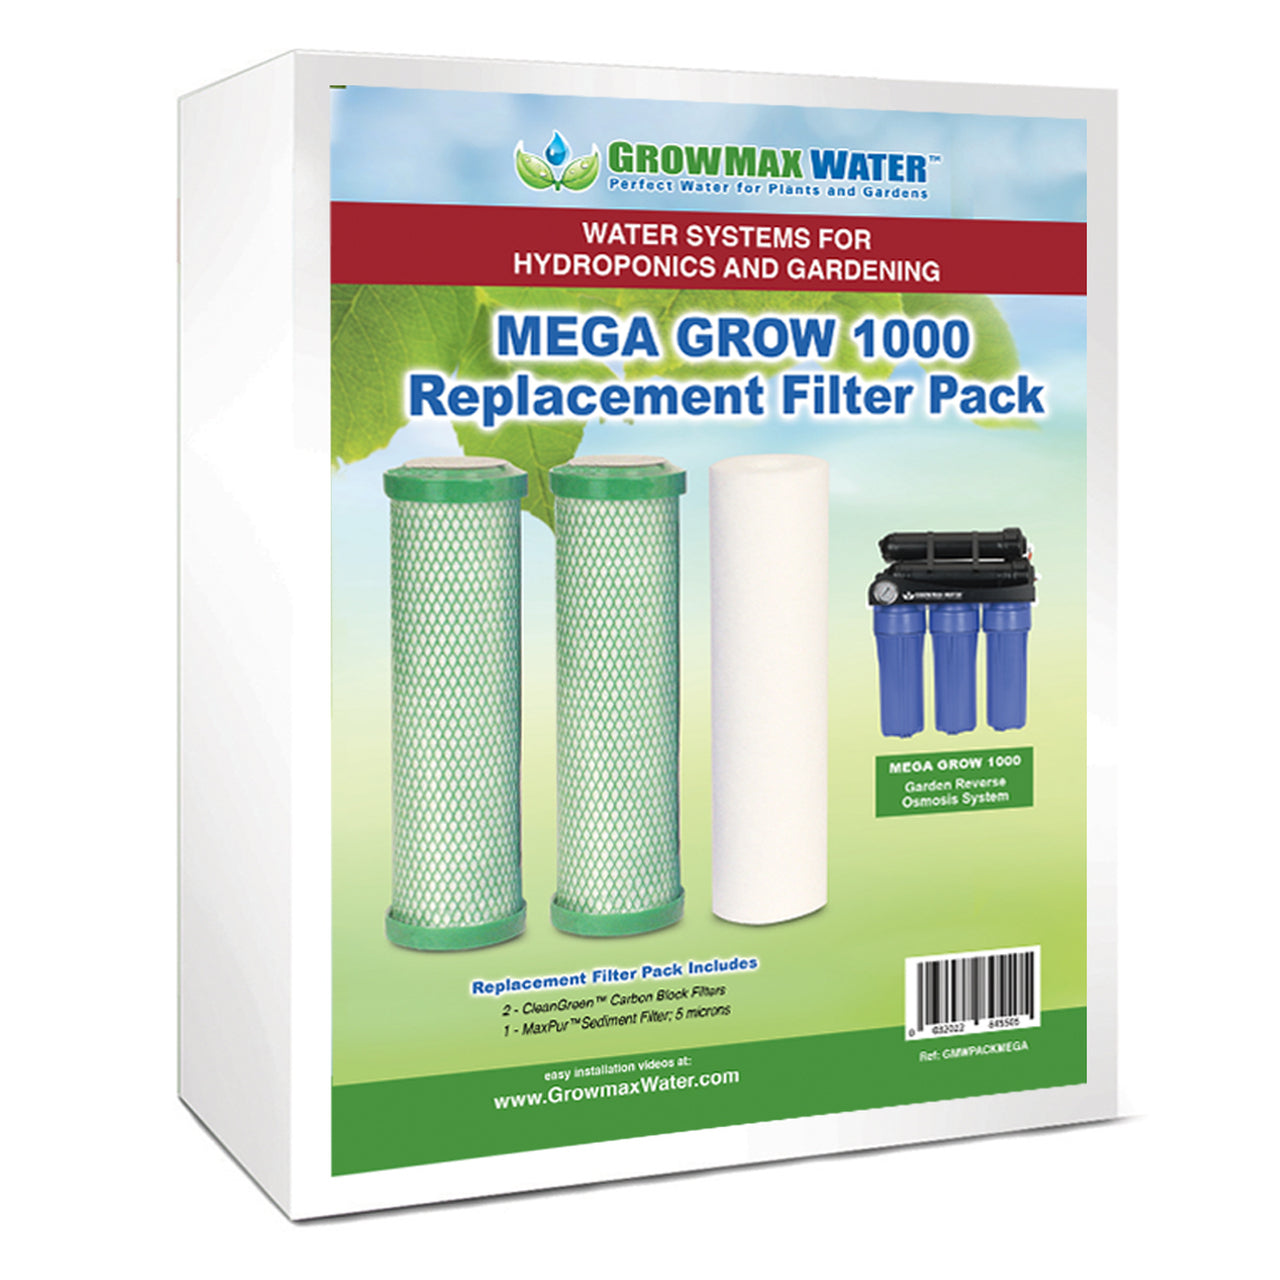 Mega Grow 1000 Replacement Filter Pack